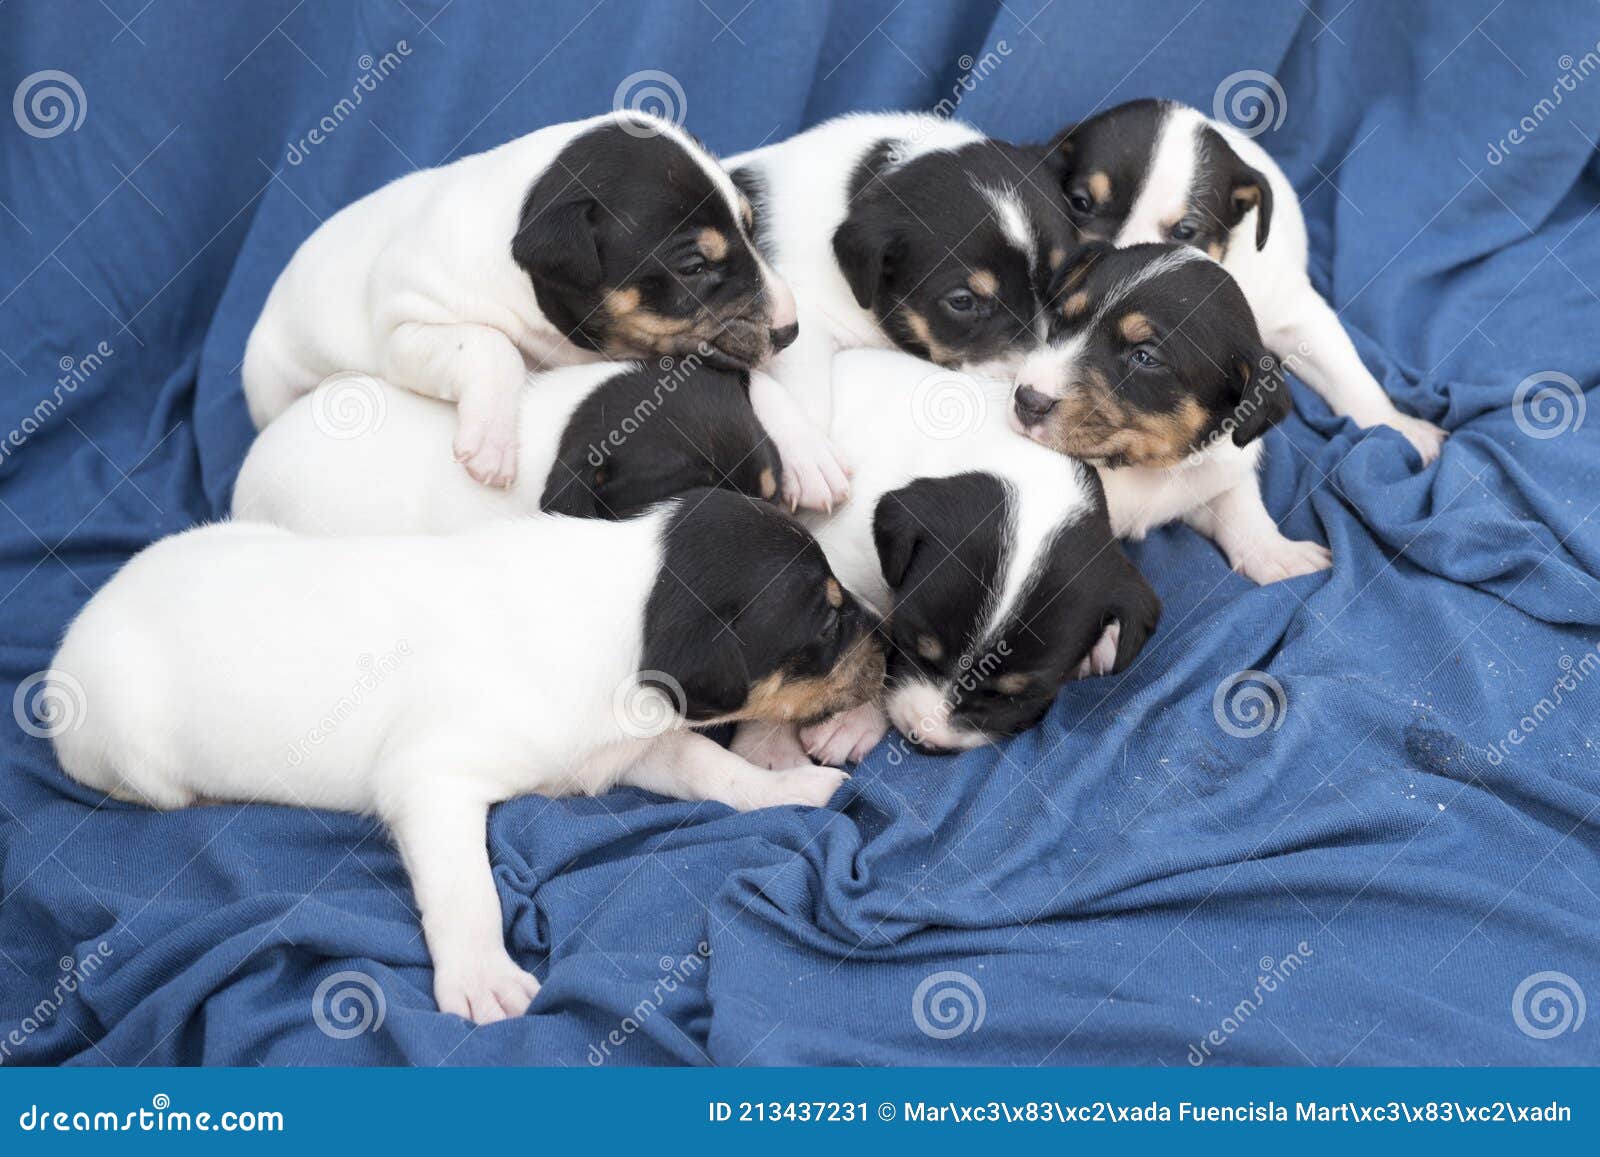 Primer Plano De Cachorros De Bodeguero Andaluz Recién Nacidos Sobre Una  Manta Azul Imagen de archivo - Imagen de retrato, primer: 213437231